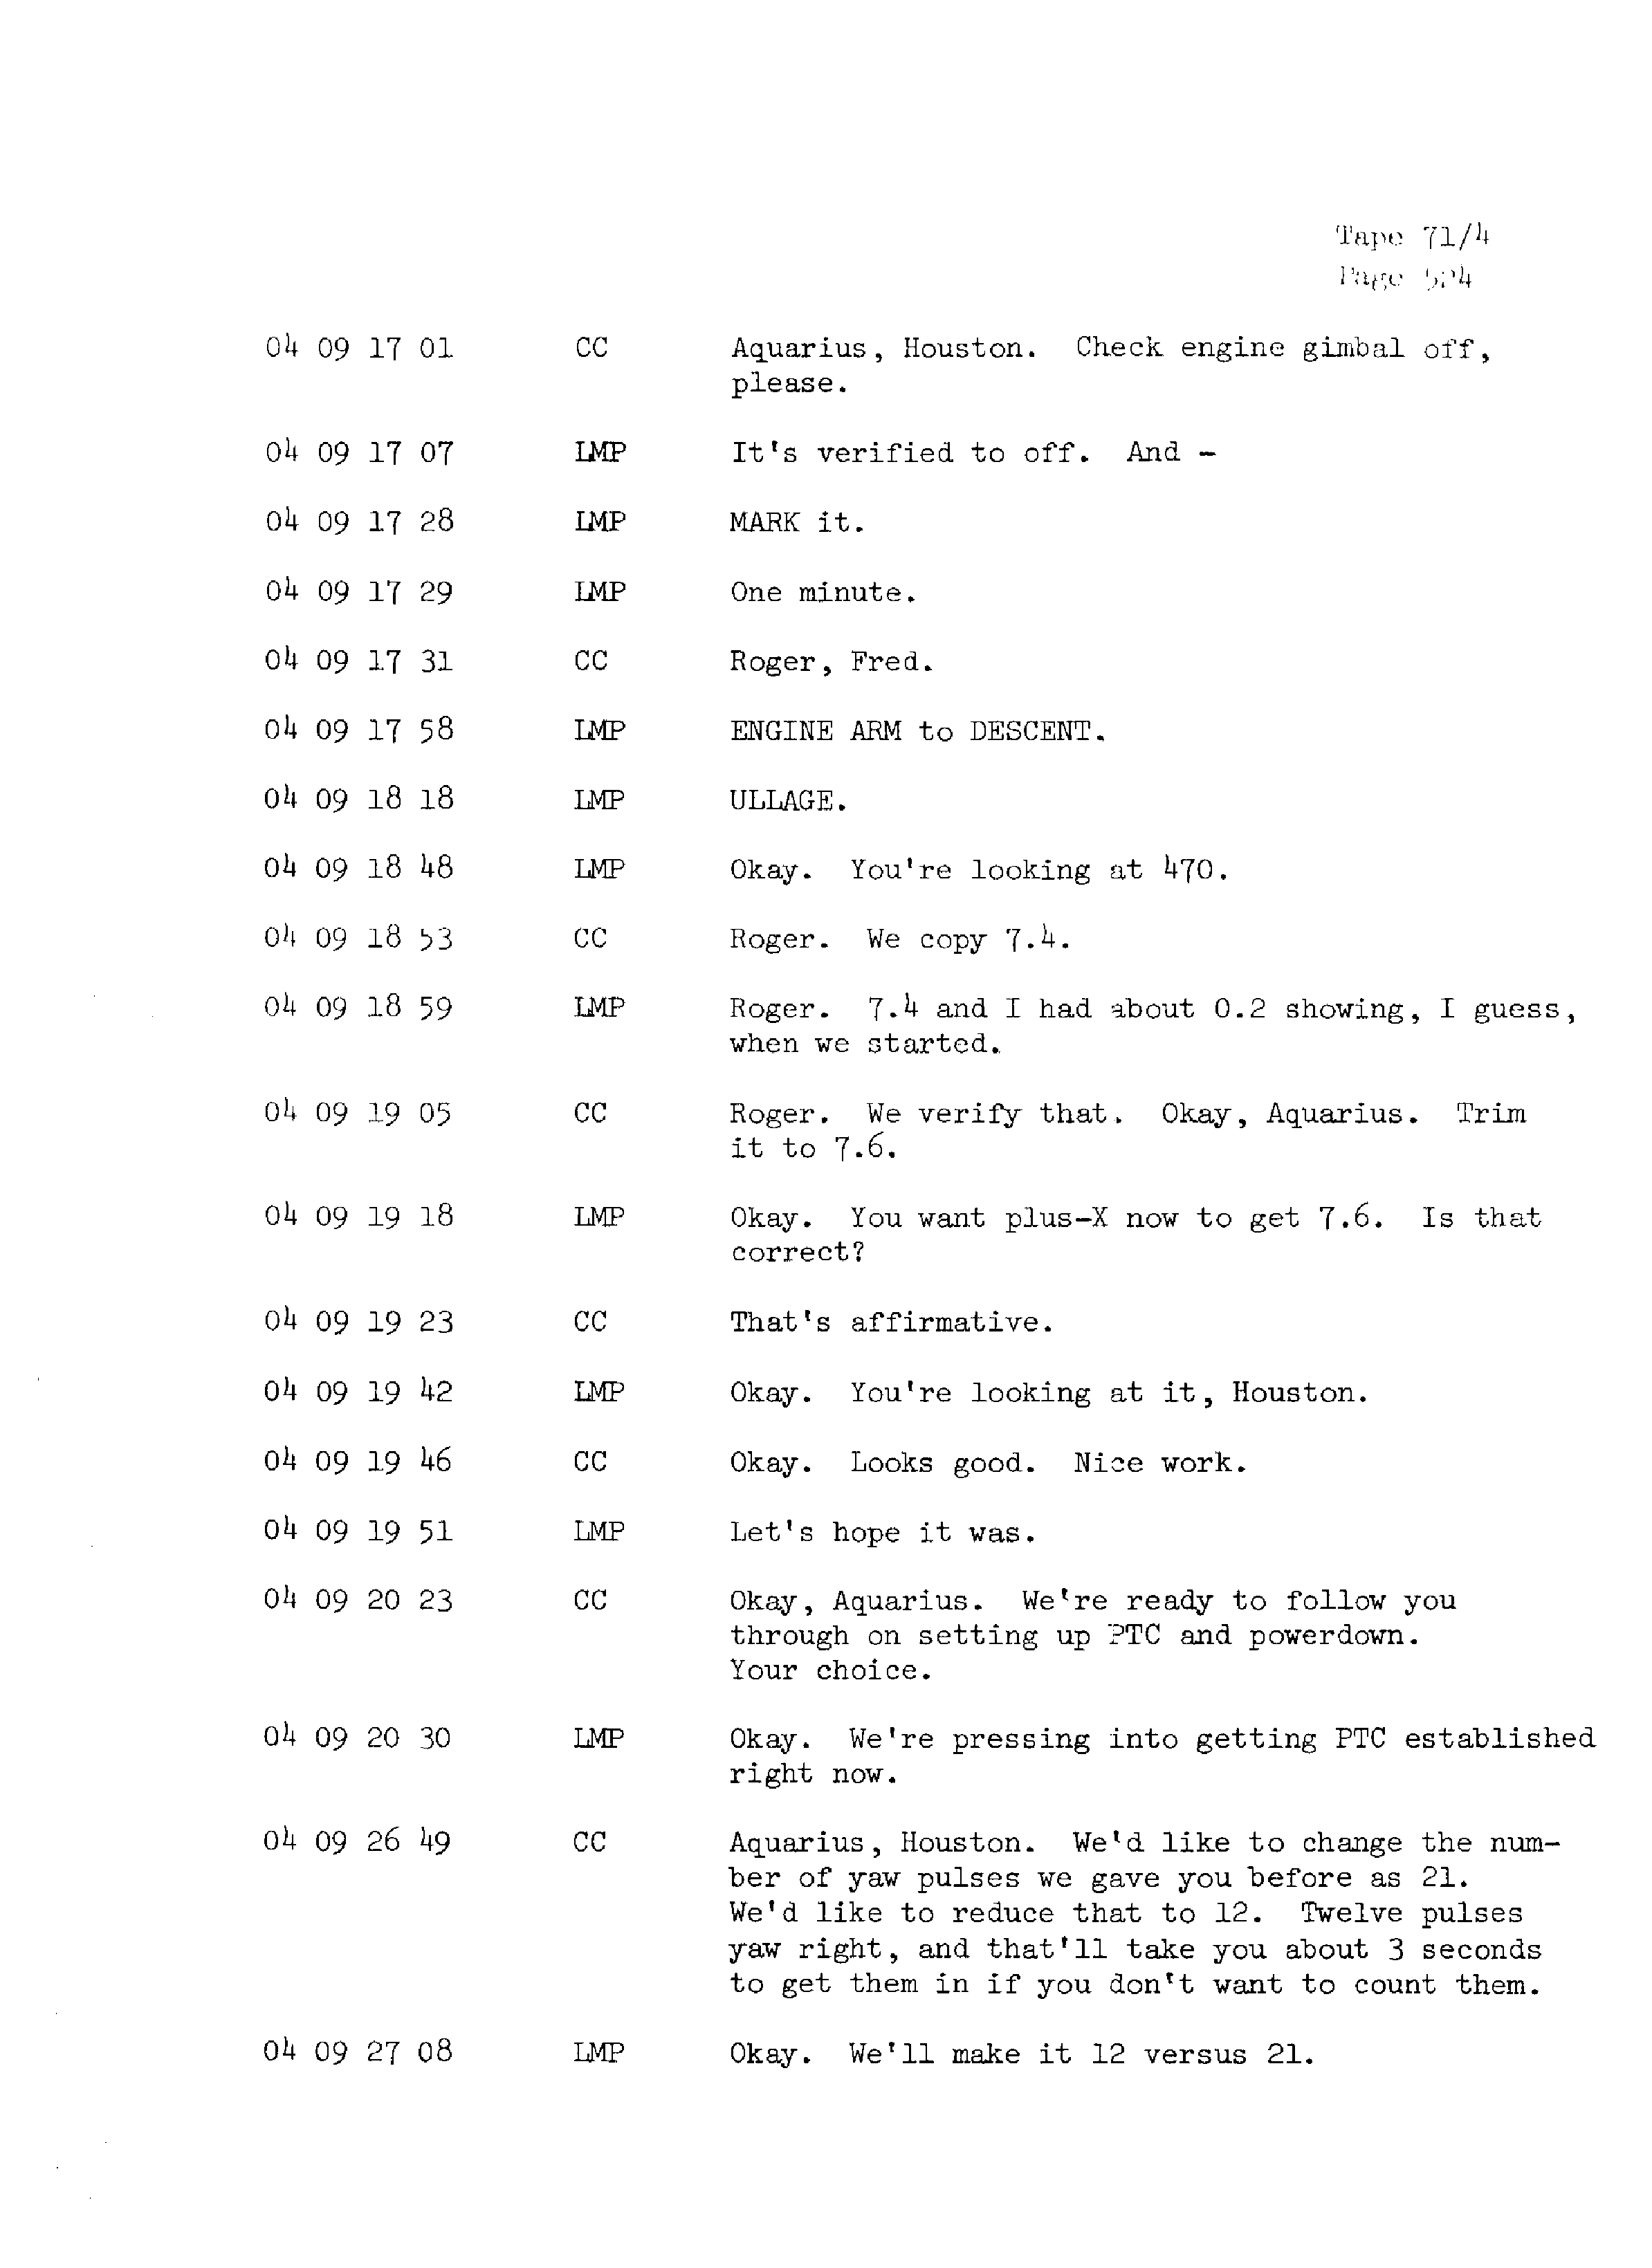 Page 531 of Apollo 13’s original transcript